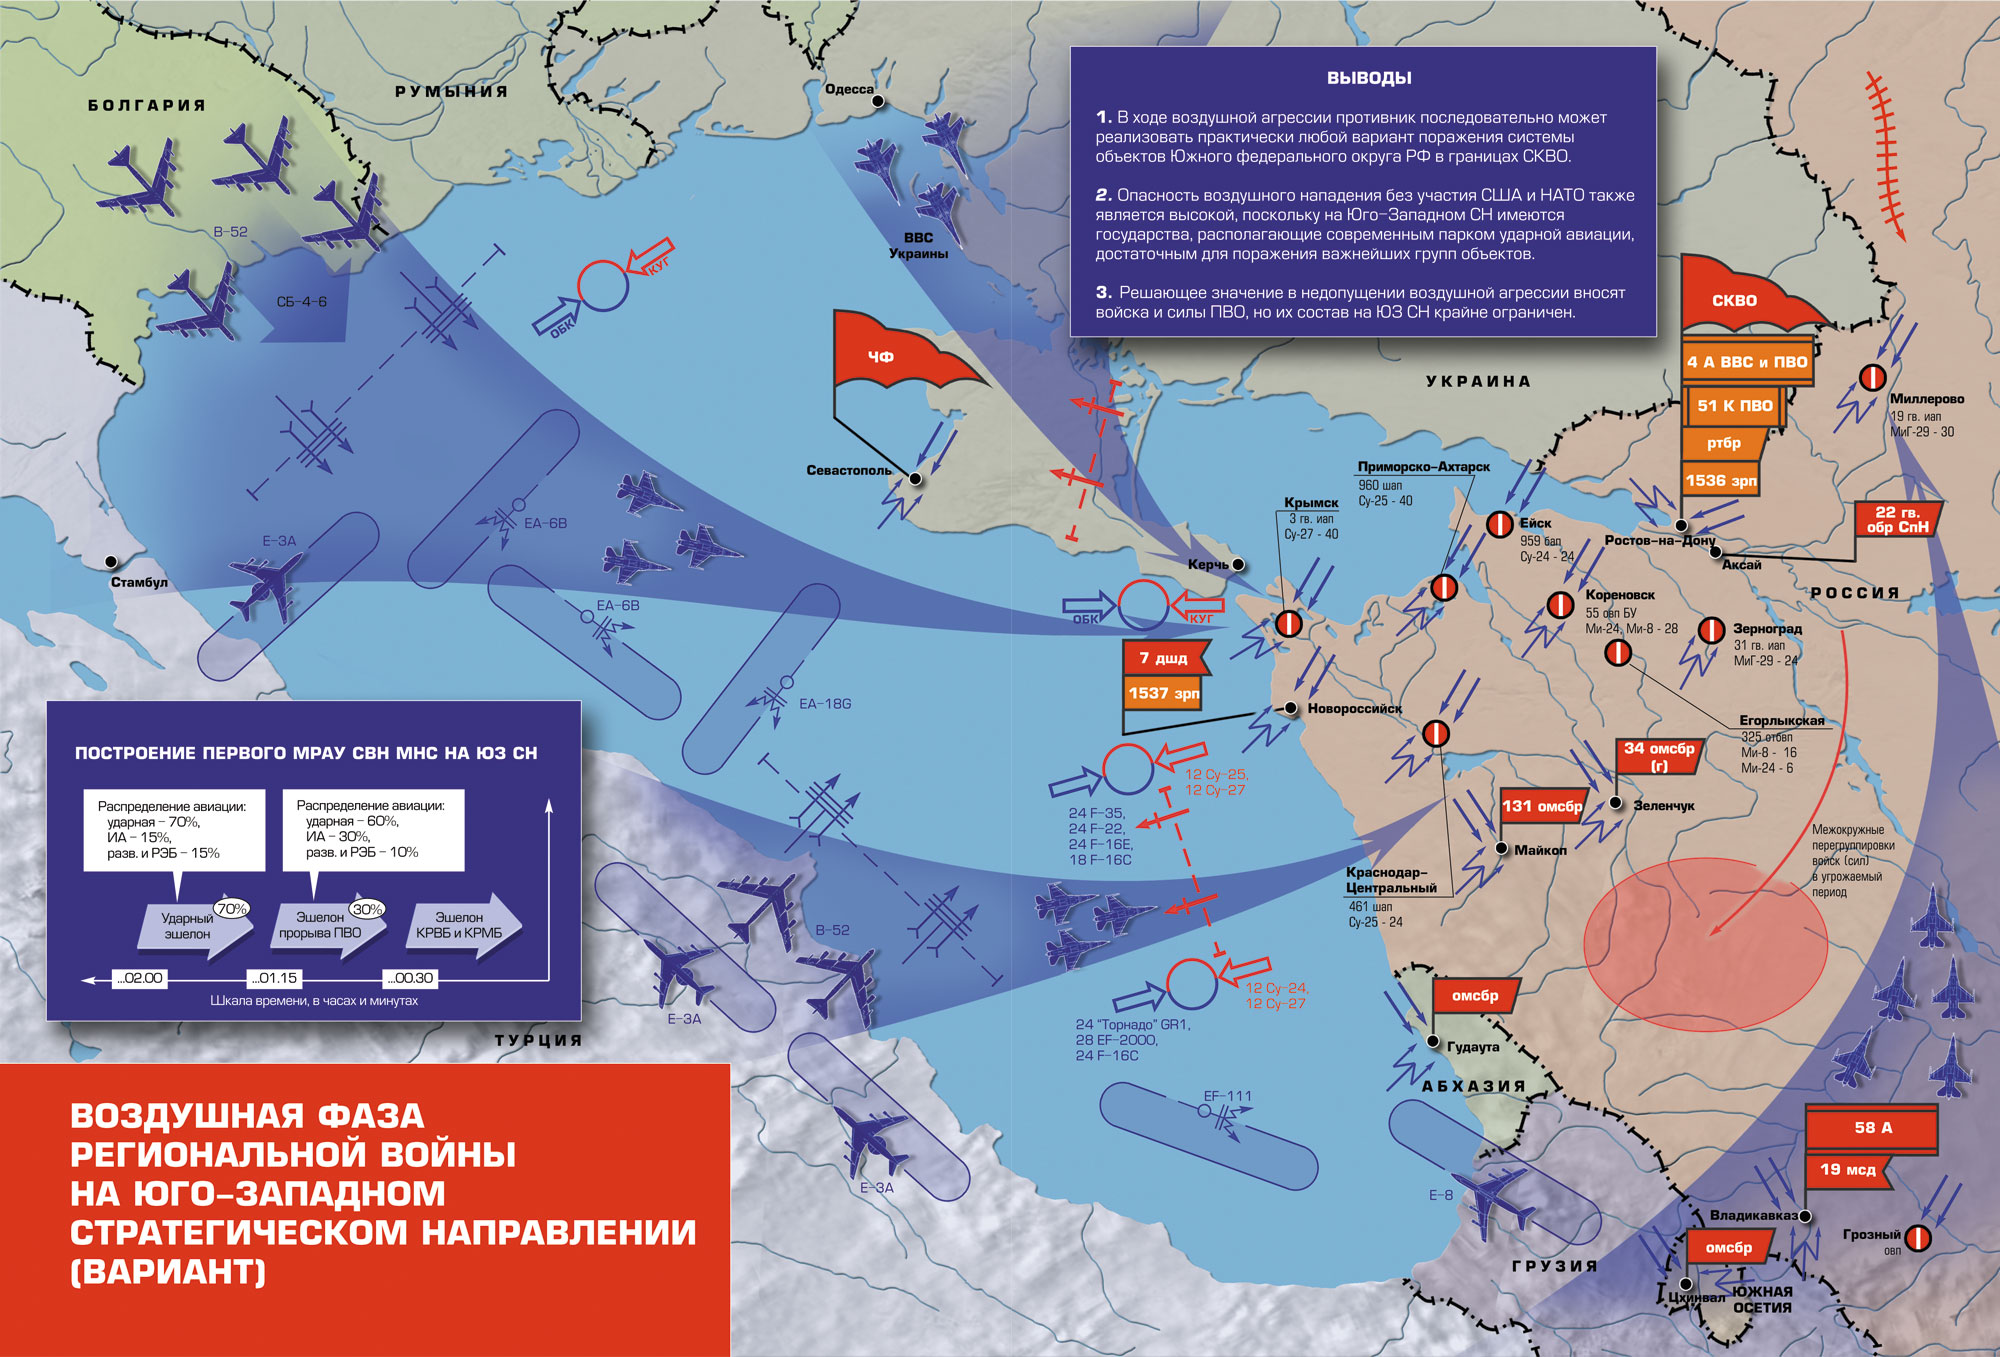 Переход часть операции. ПВО НАТО на карте. Военные стратегические направления. Юго-Западное стратегическое направление. Западное стратегическое направление России.